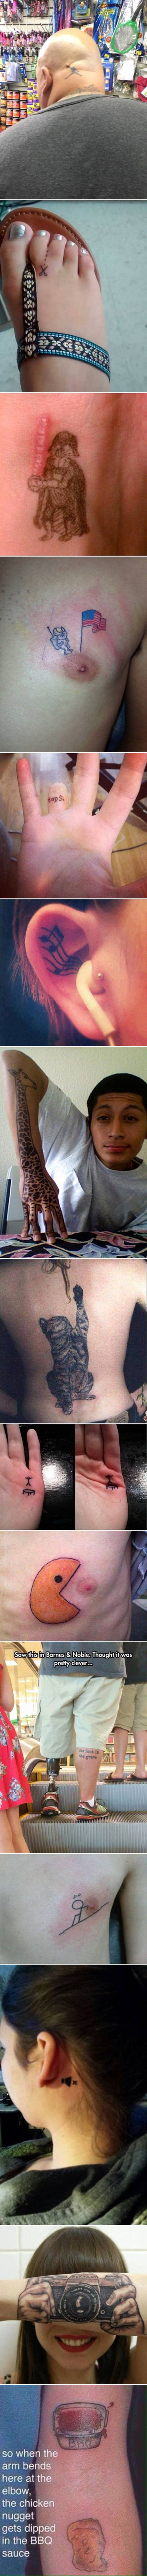 Nevjerojatno je kako se maštovite tetovaže mogu dobro uklopiti u sve dijelove tijela